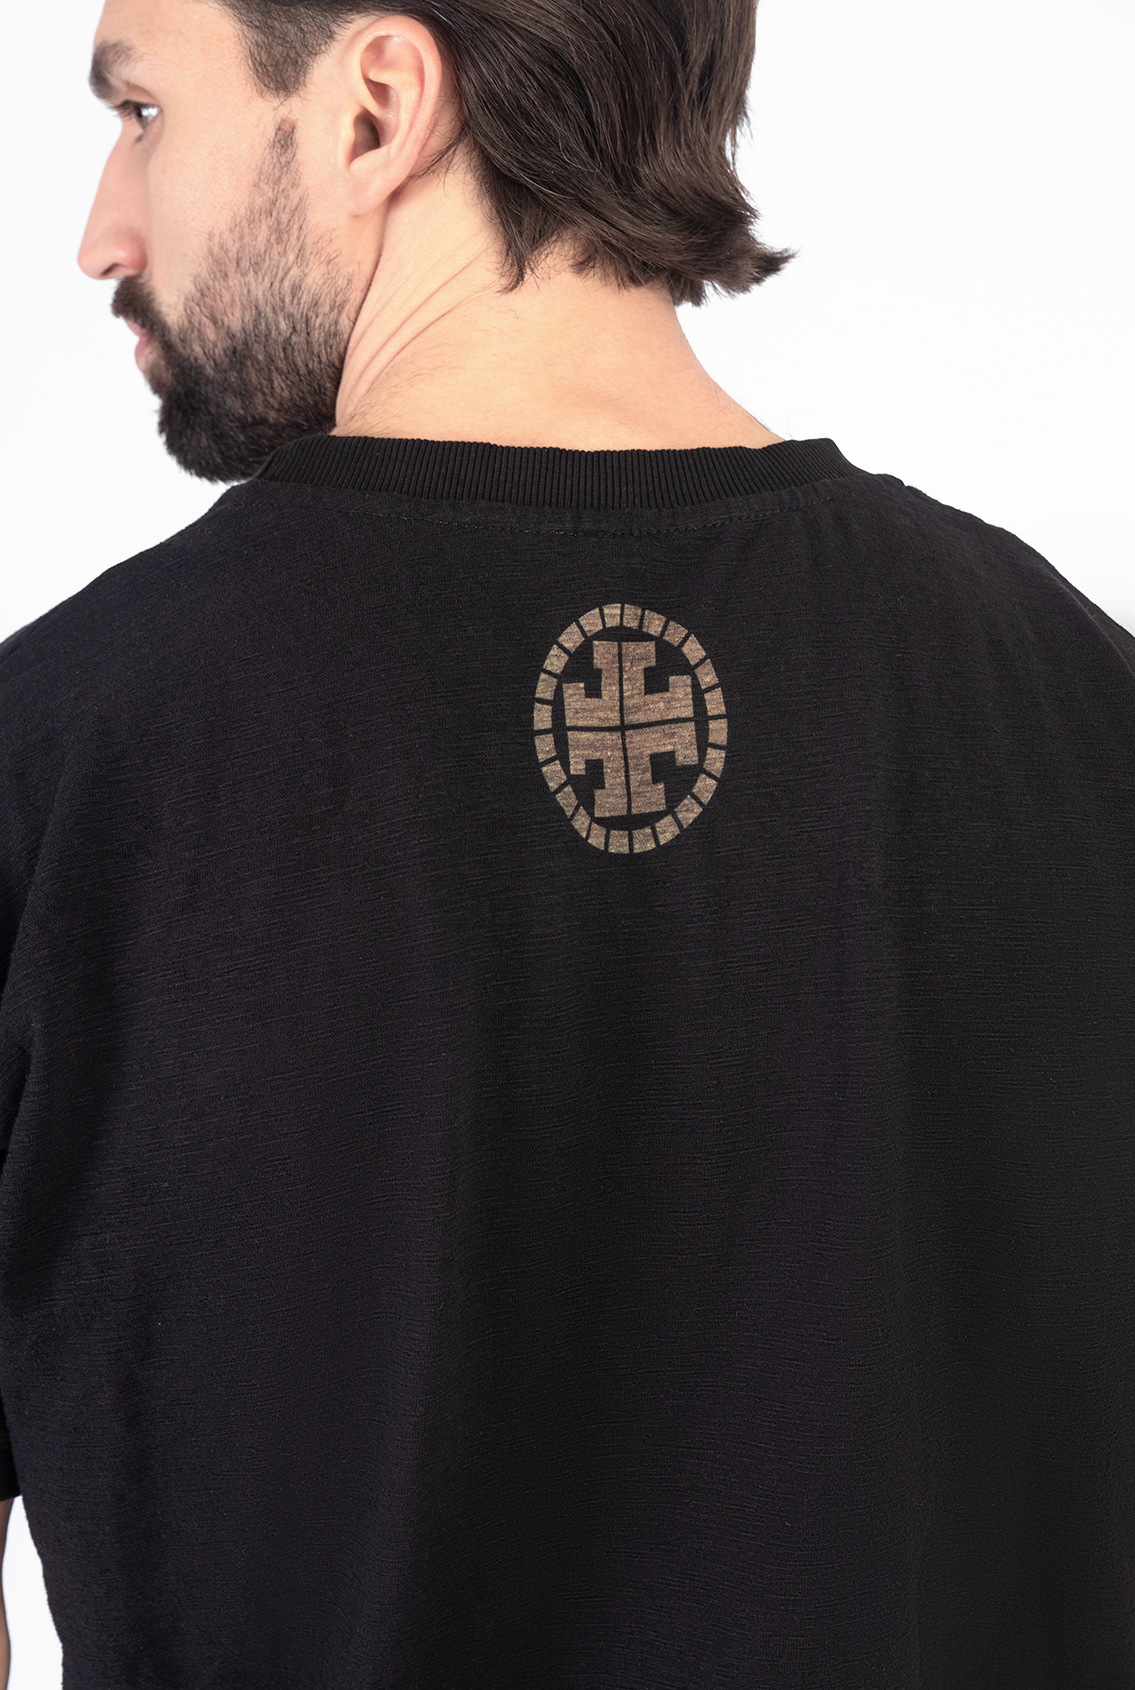 Одежда с православными символами